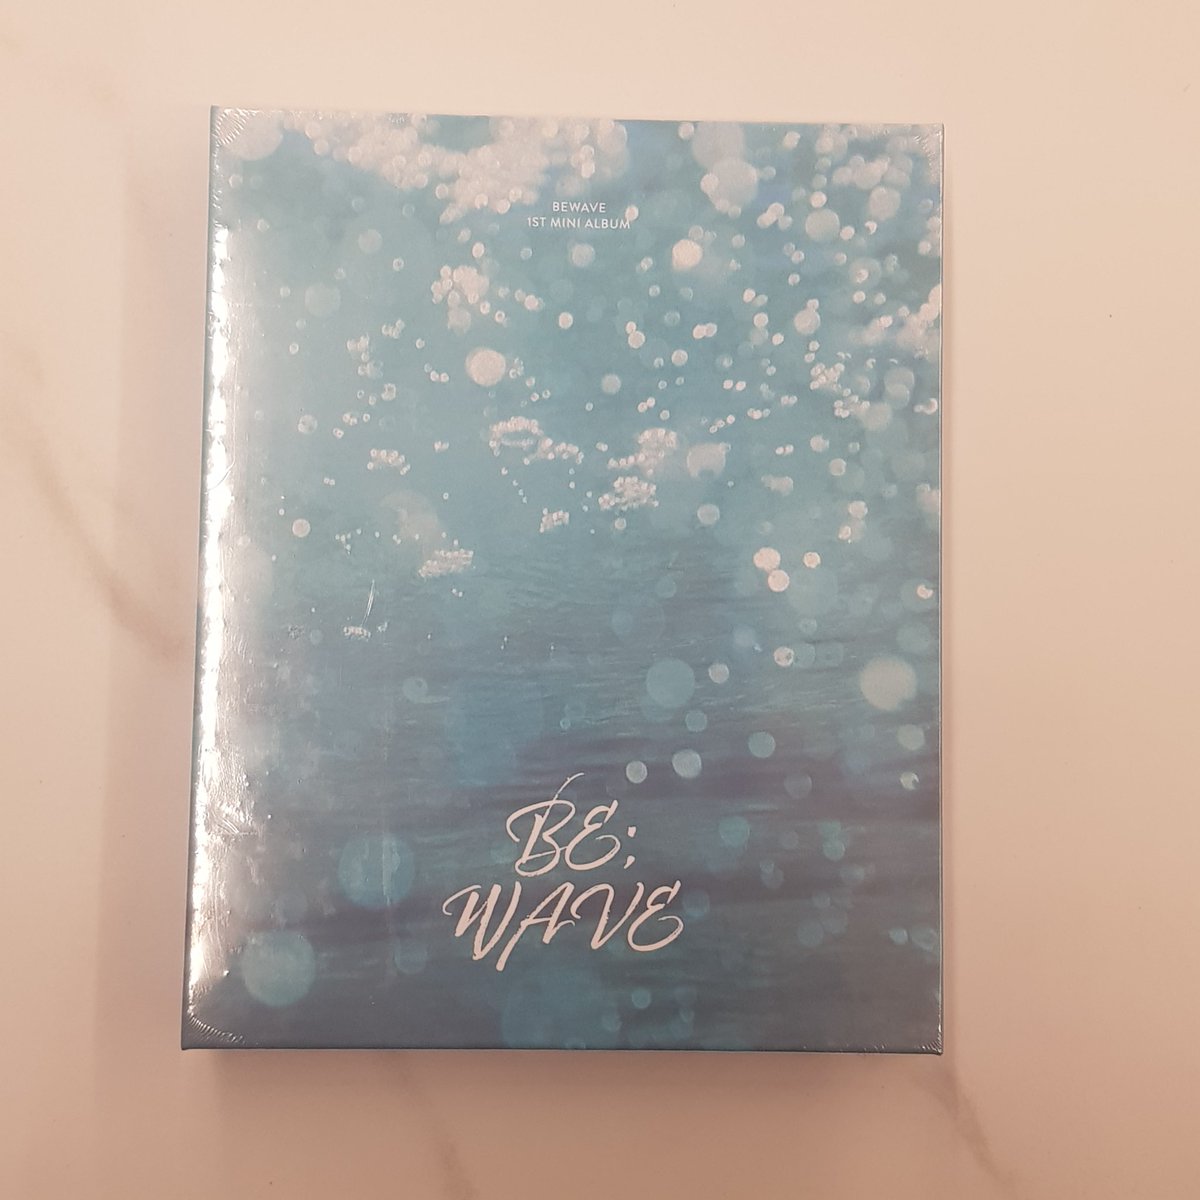 🎶 비트로드 신보 입고 완료 💙 비웨이브 (BEWAVE) - 1st Mini Album [BE;WAVE] 💙 구매 가능합니다! 🫶🏻 #합정 #홍대 #비트로드